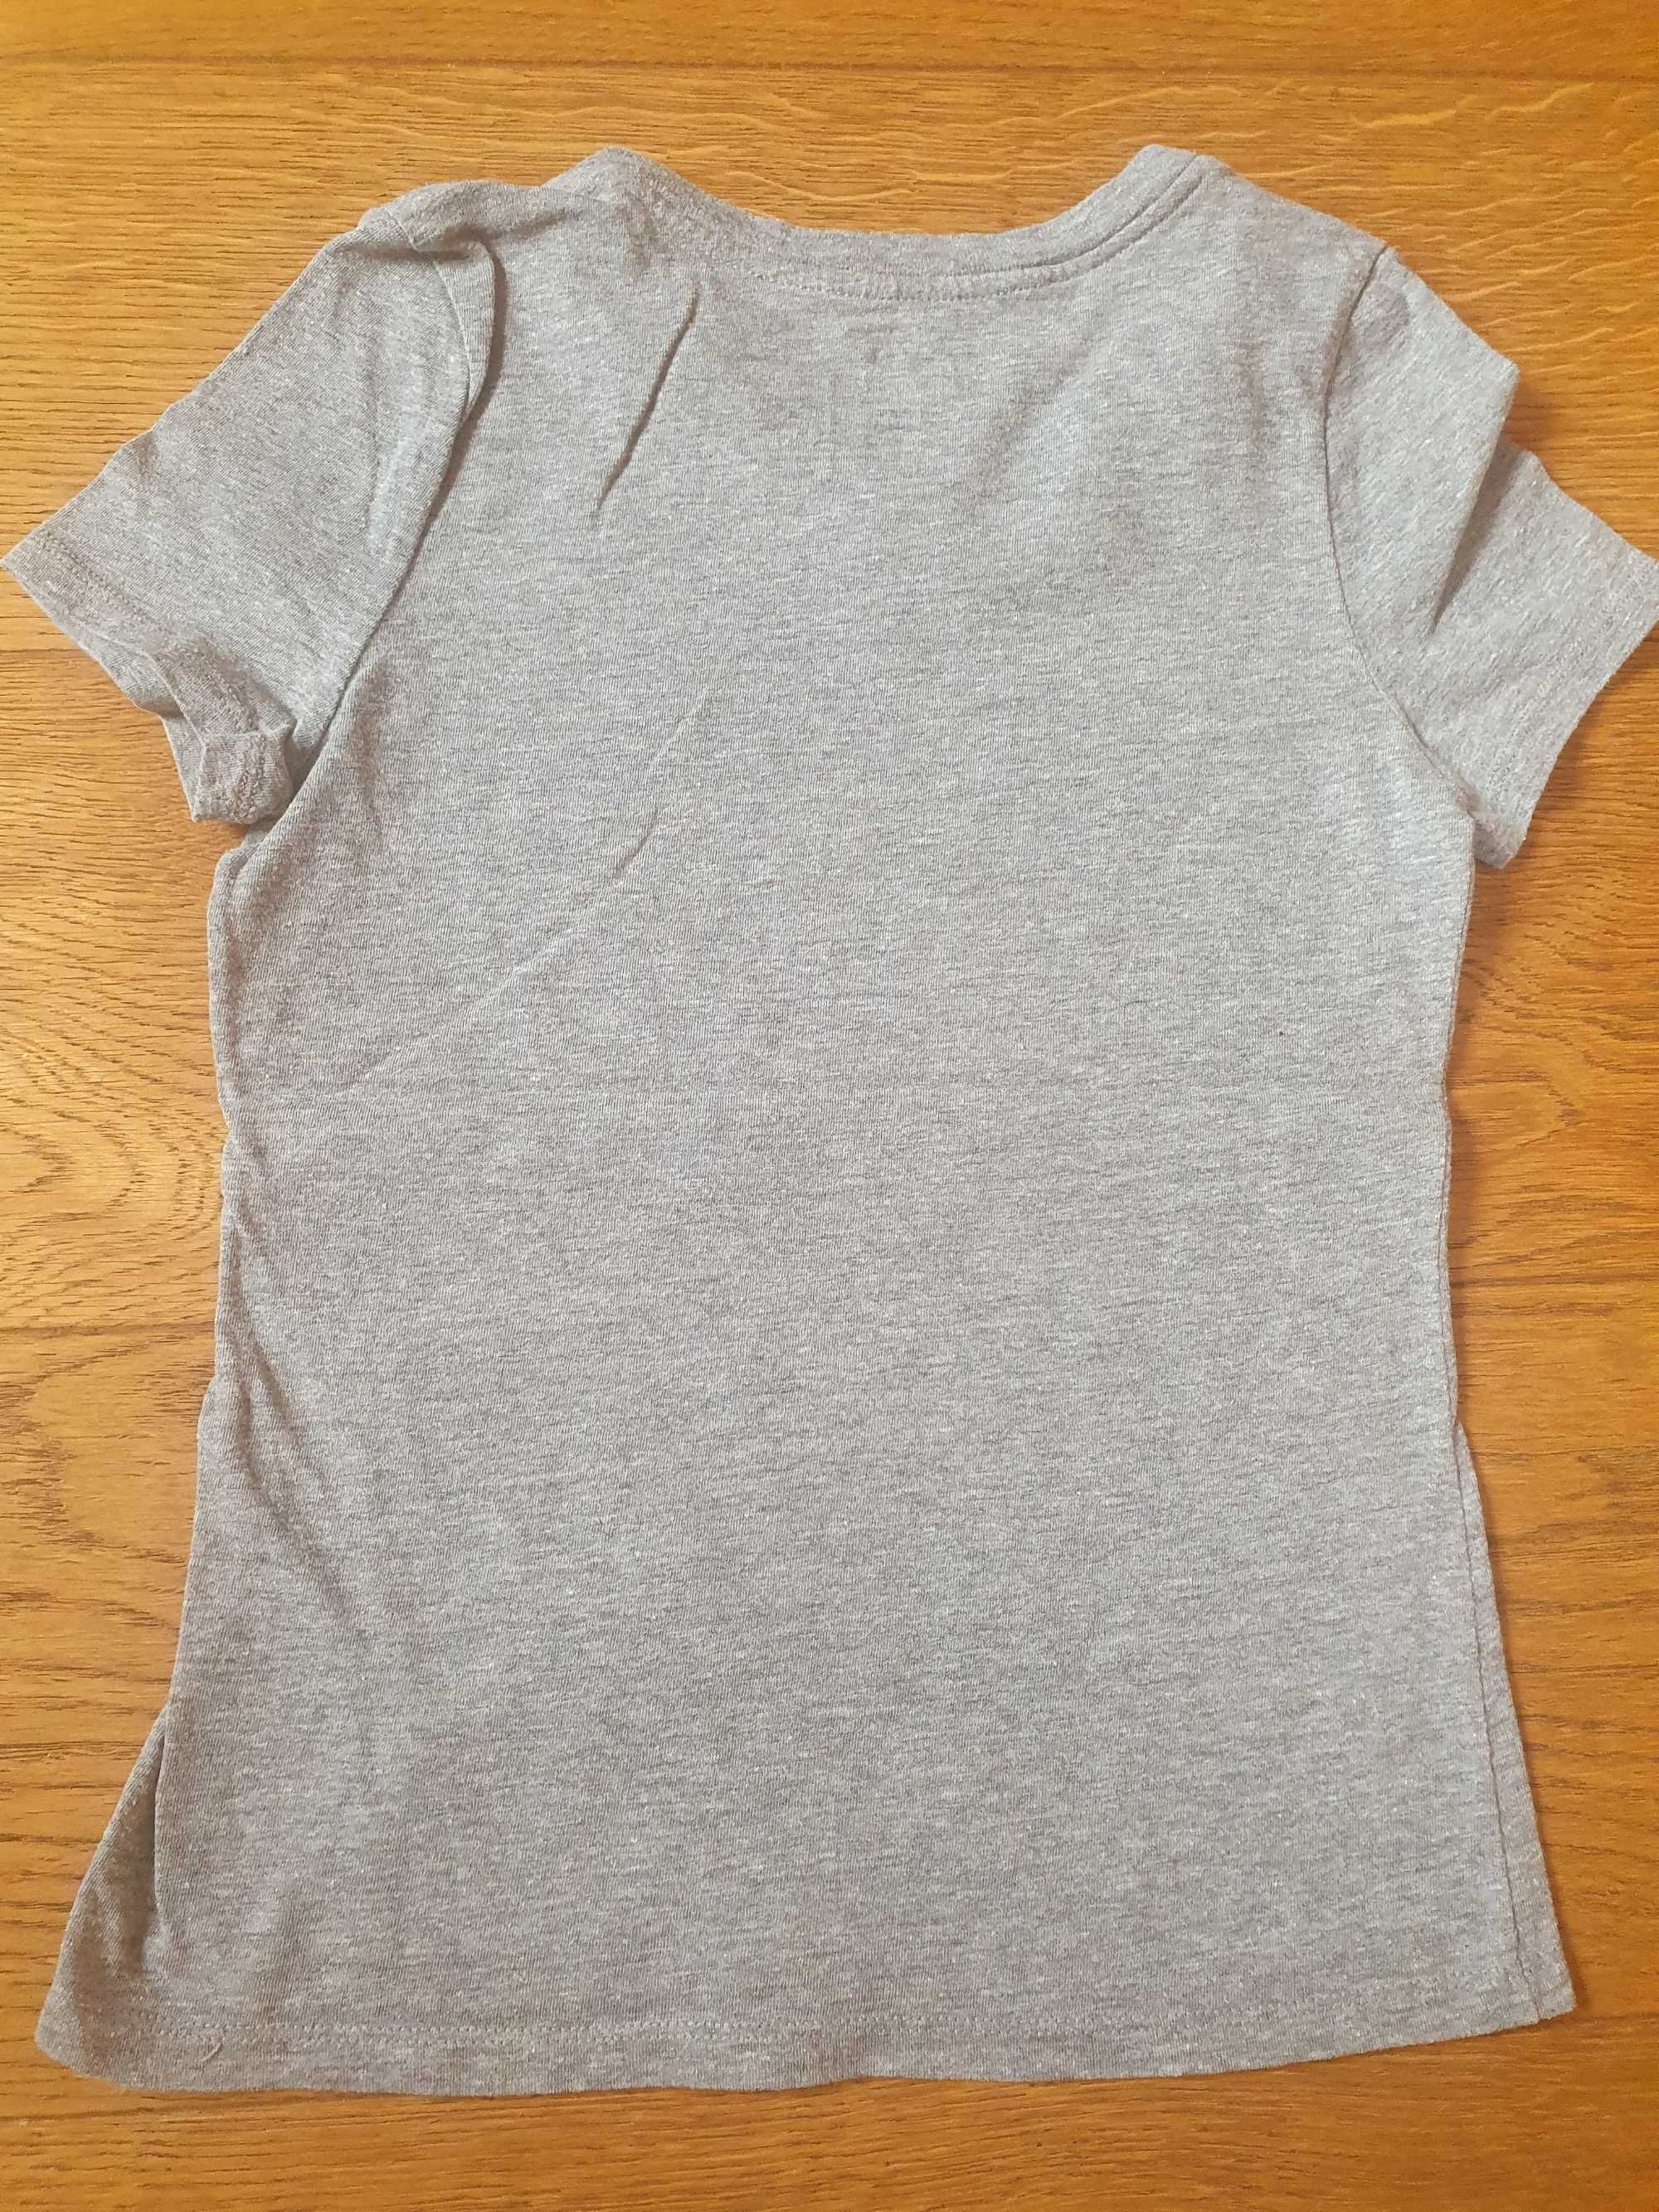 Koszulka sportowa t-shirt dla dziewczynki Nike XS 122 cm